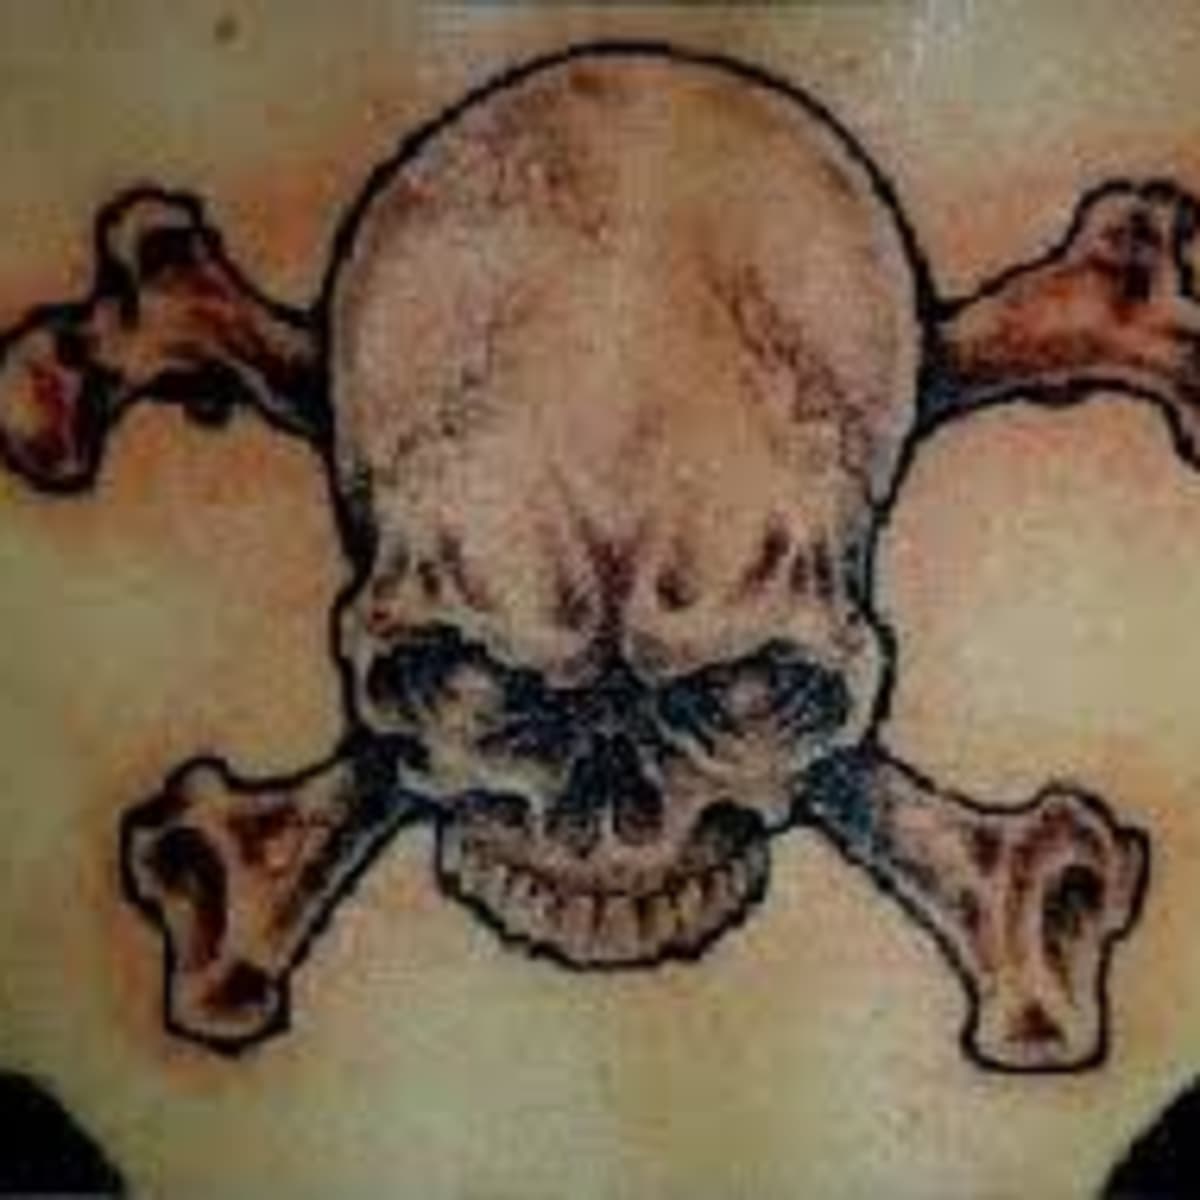 Skulls Chain Tattoo by Gorilla TattooNOW